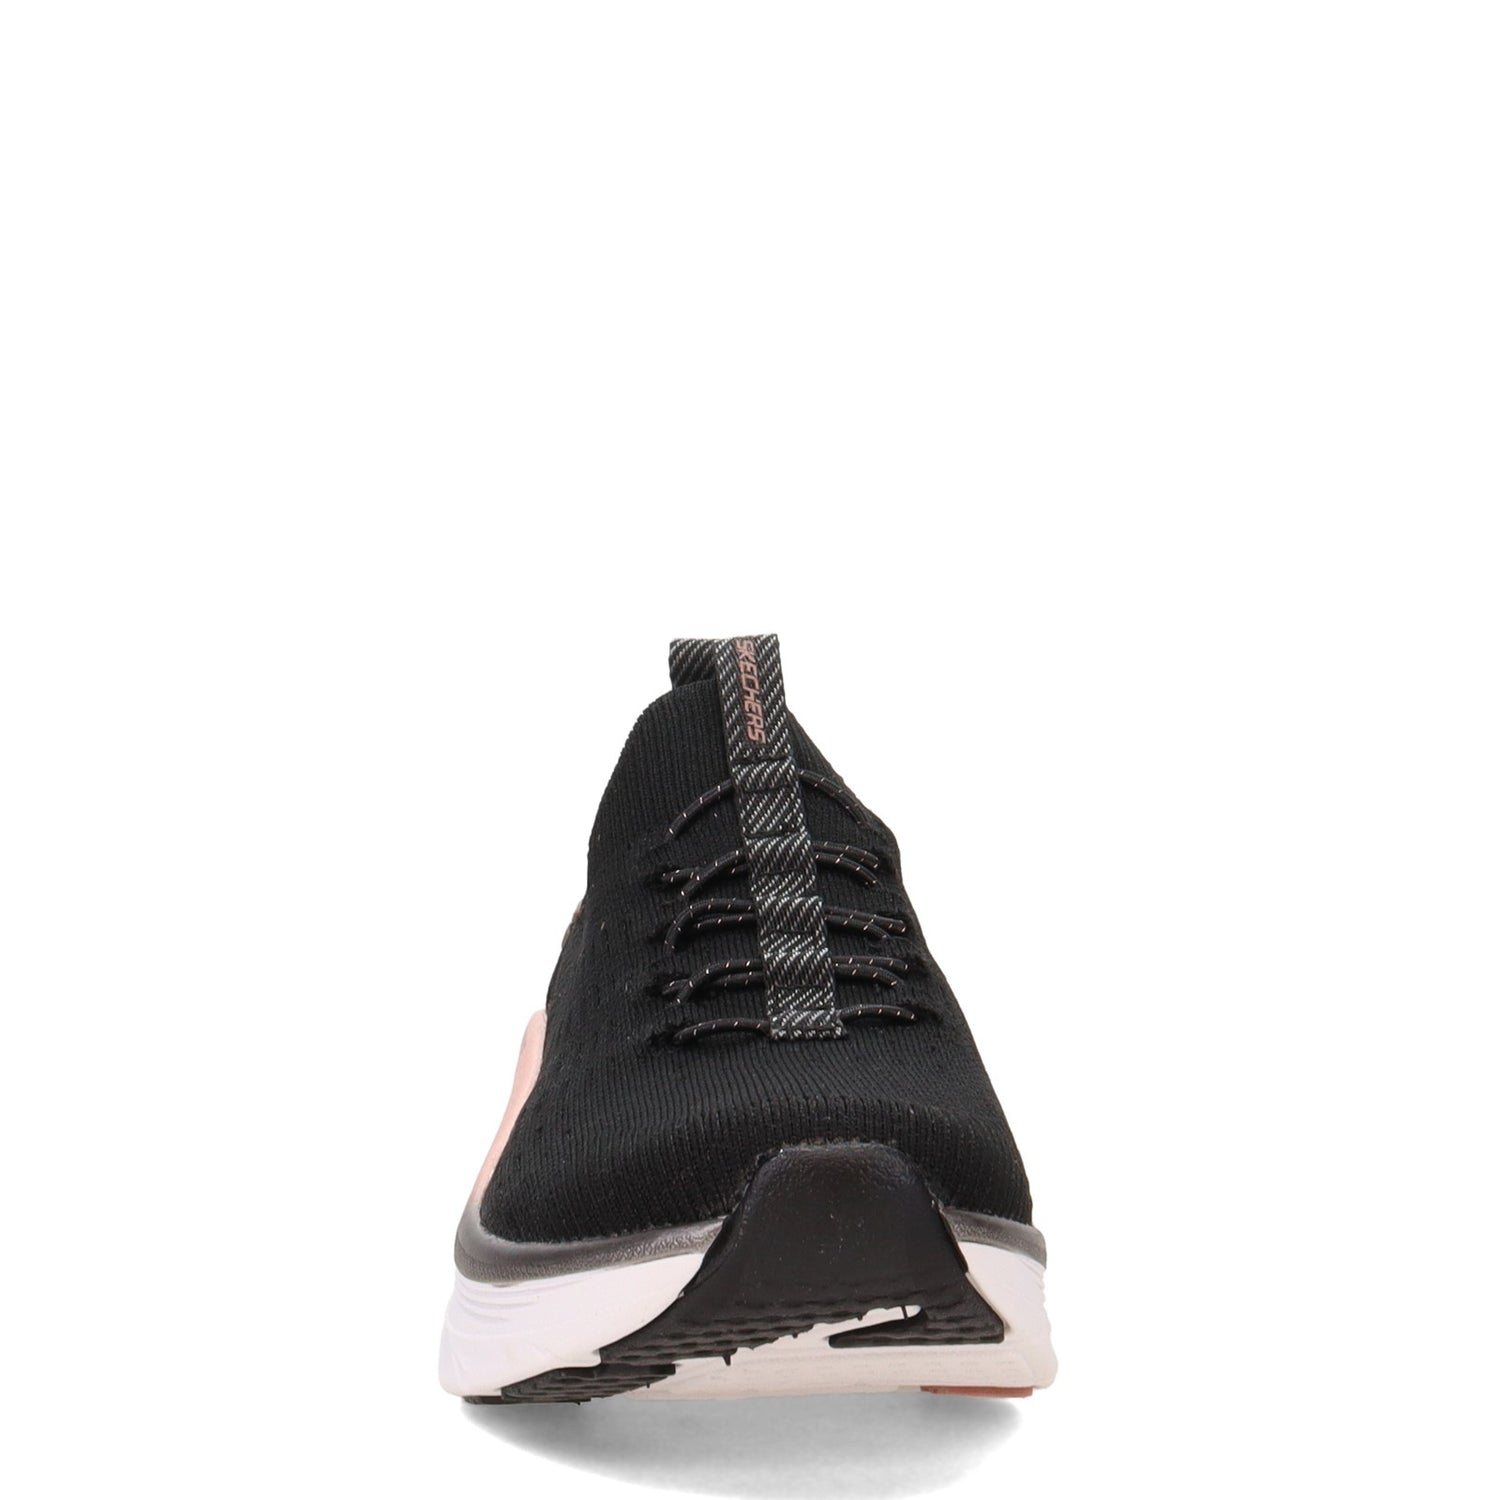 Peltz Shoes  Women's Skechers Relaxed Fit: D'Lux Walker - Let it Glow Walking Shoe BLACK ROSE 149366-BKRG